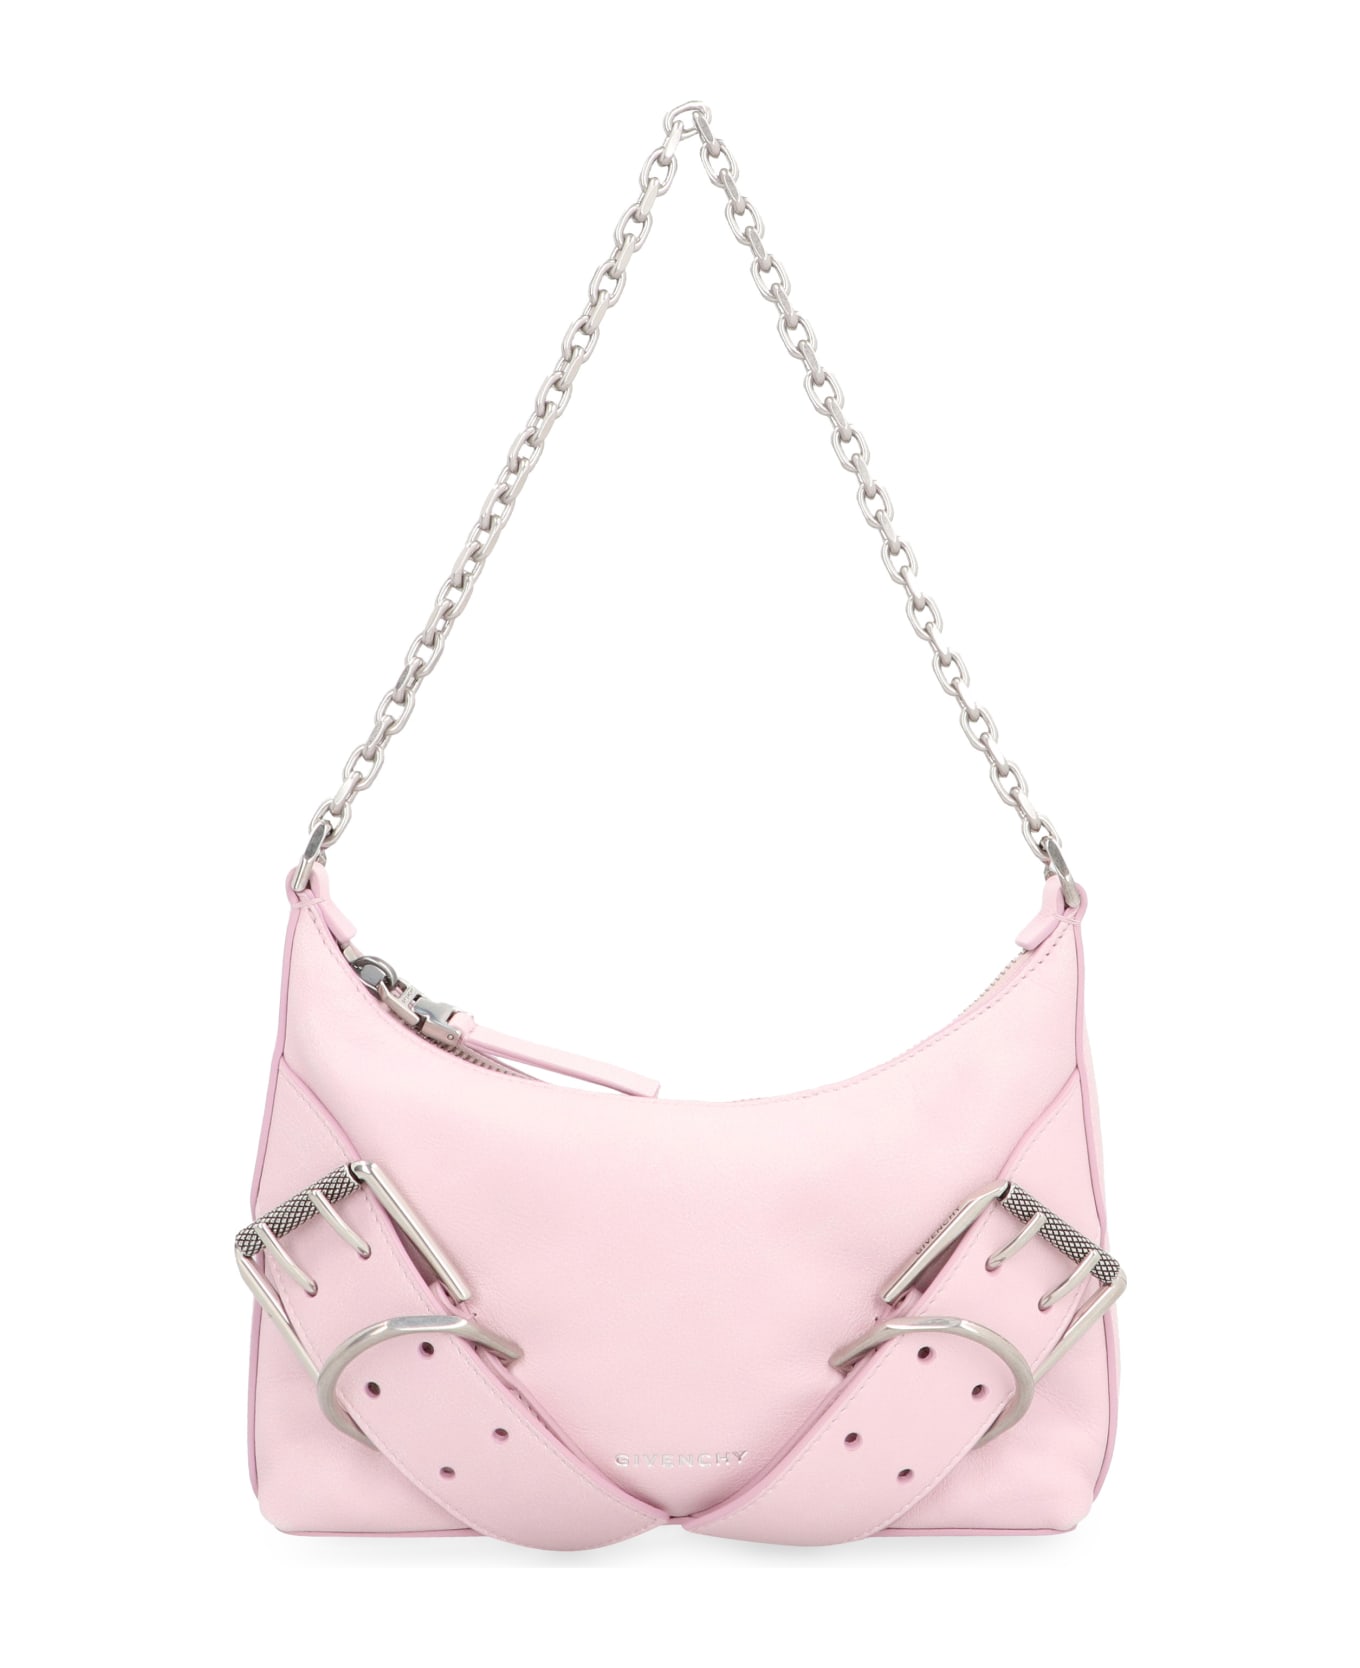 Givenchy Voyou Leather Shoulder Bag - Pink トートバッグ